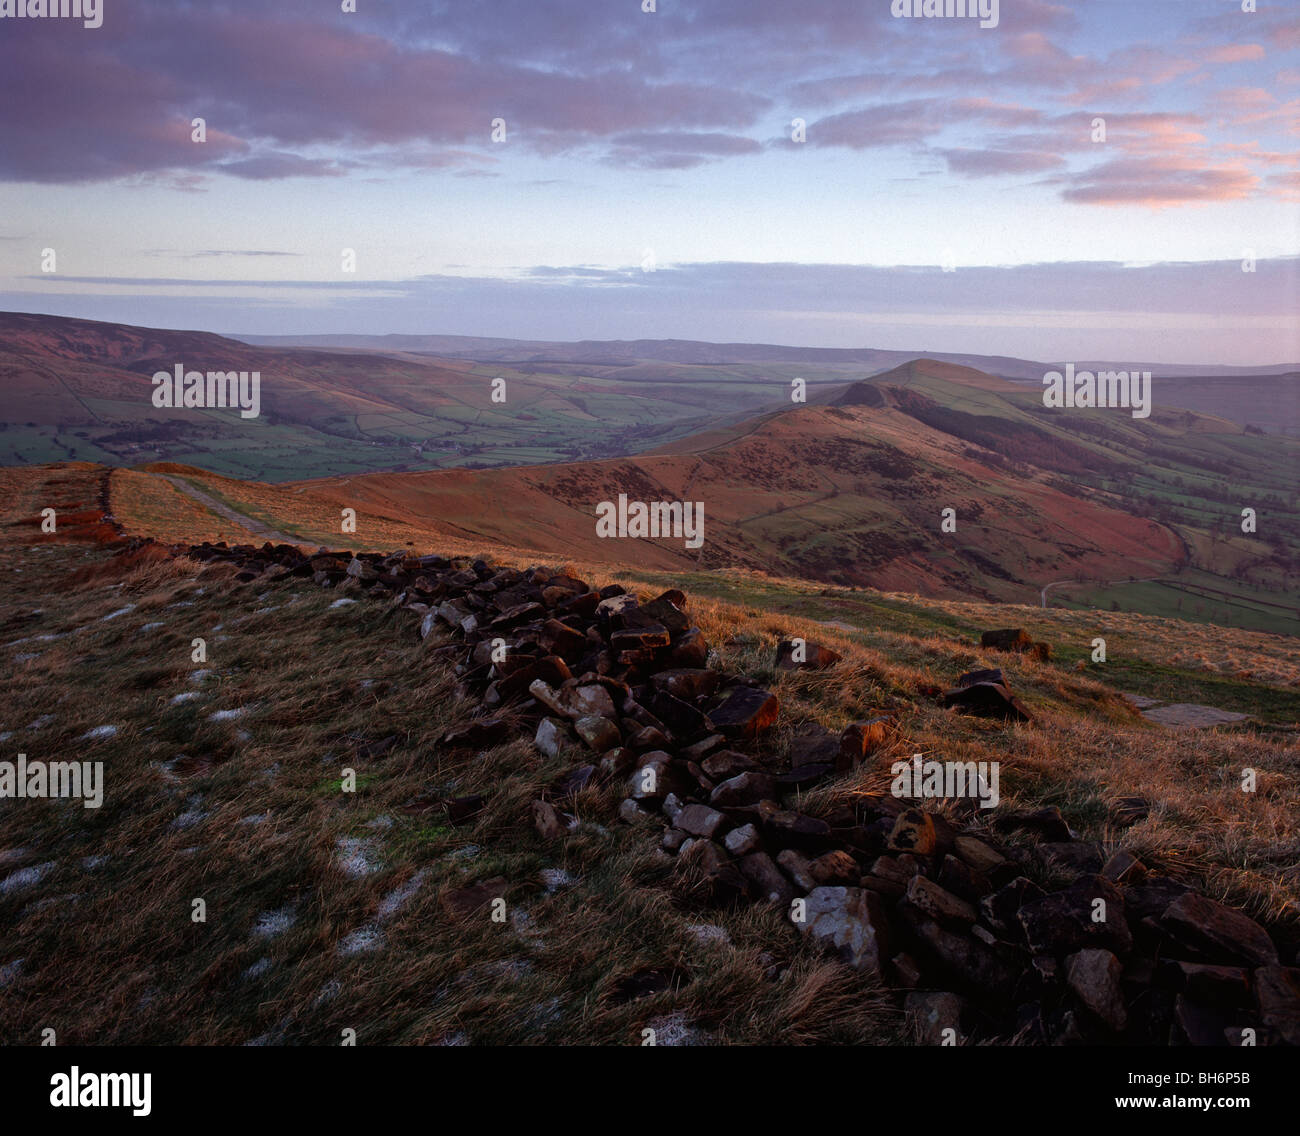 Afficher le long de la grande arête à Mam Tor, parc national de Peak District, Derbyshire, Angleterre Banque D'Images